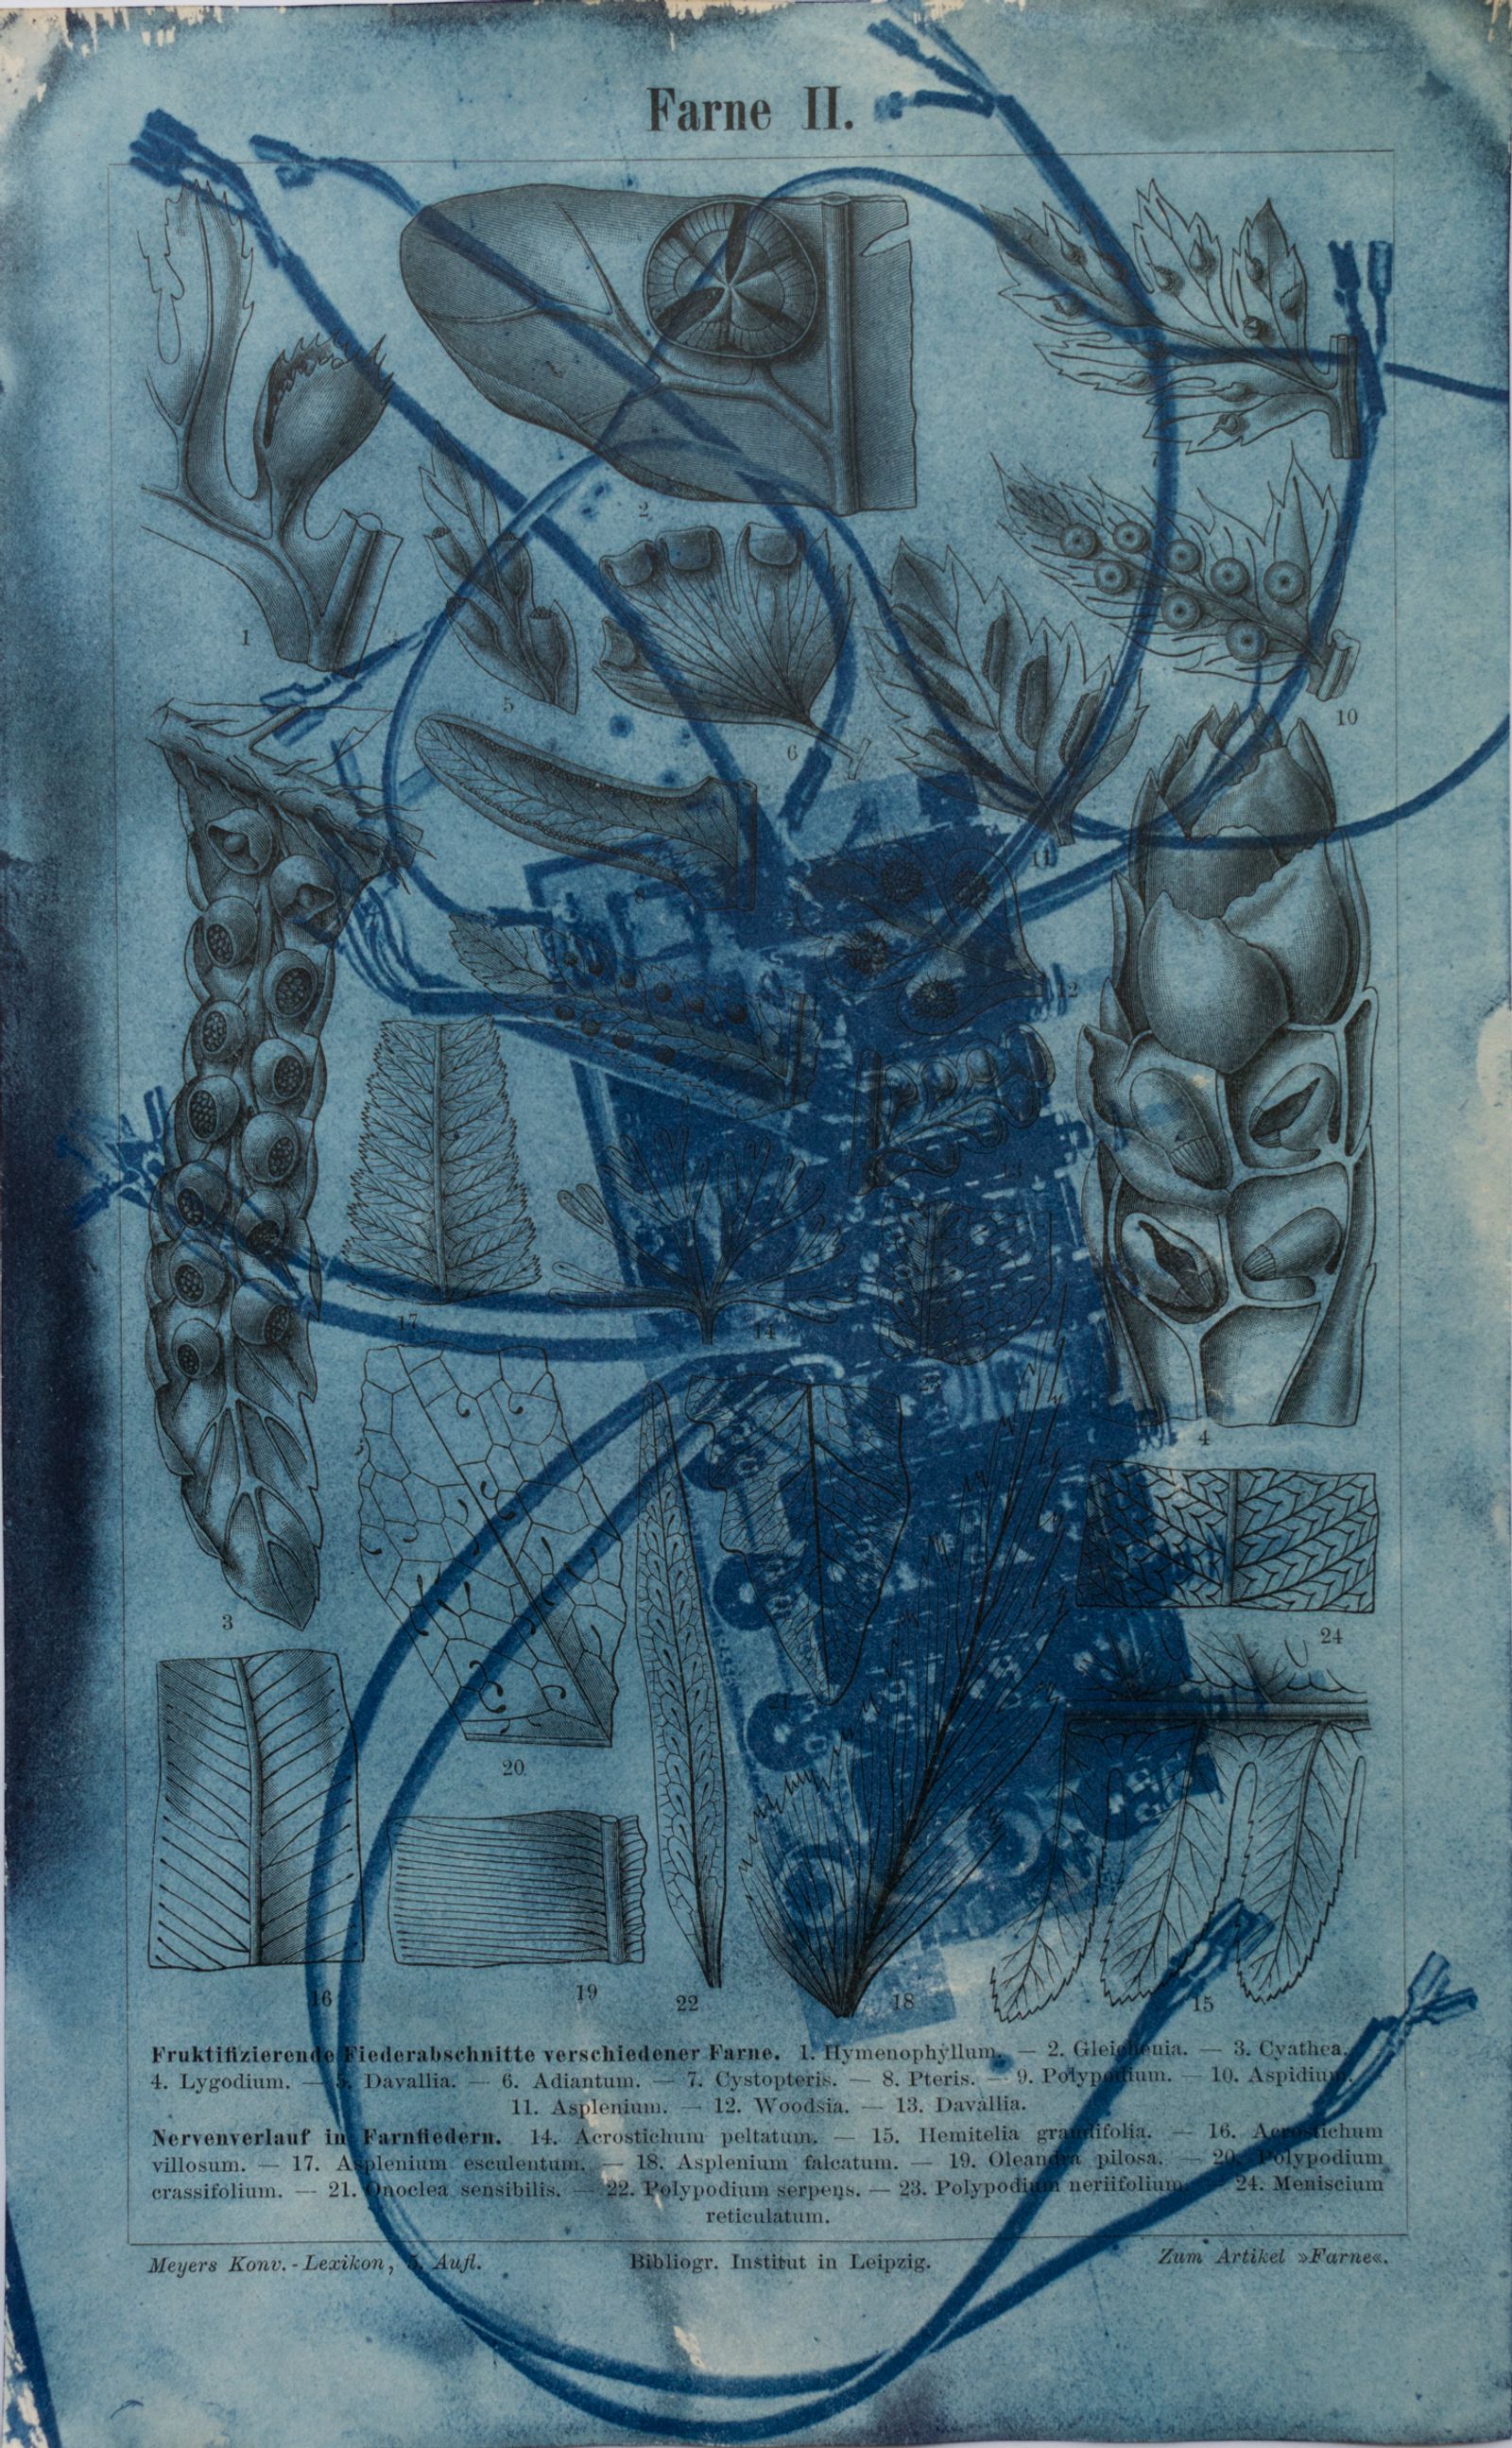 © Florence Iff - Amalgamated Fragmentation/ Technosphere- Board 2 cyanotype on vintage lithography